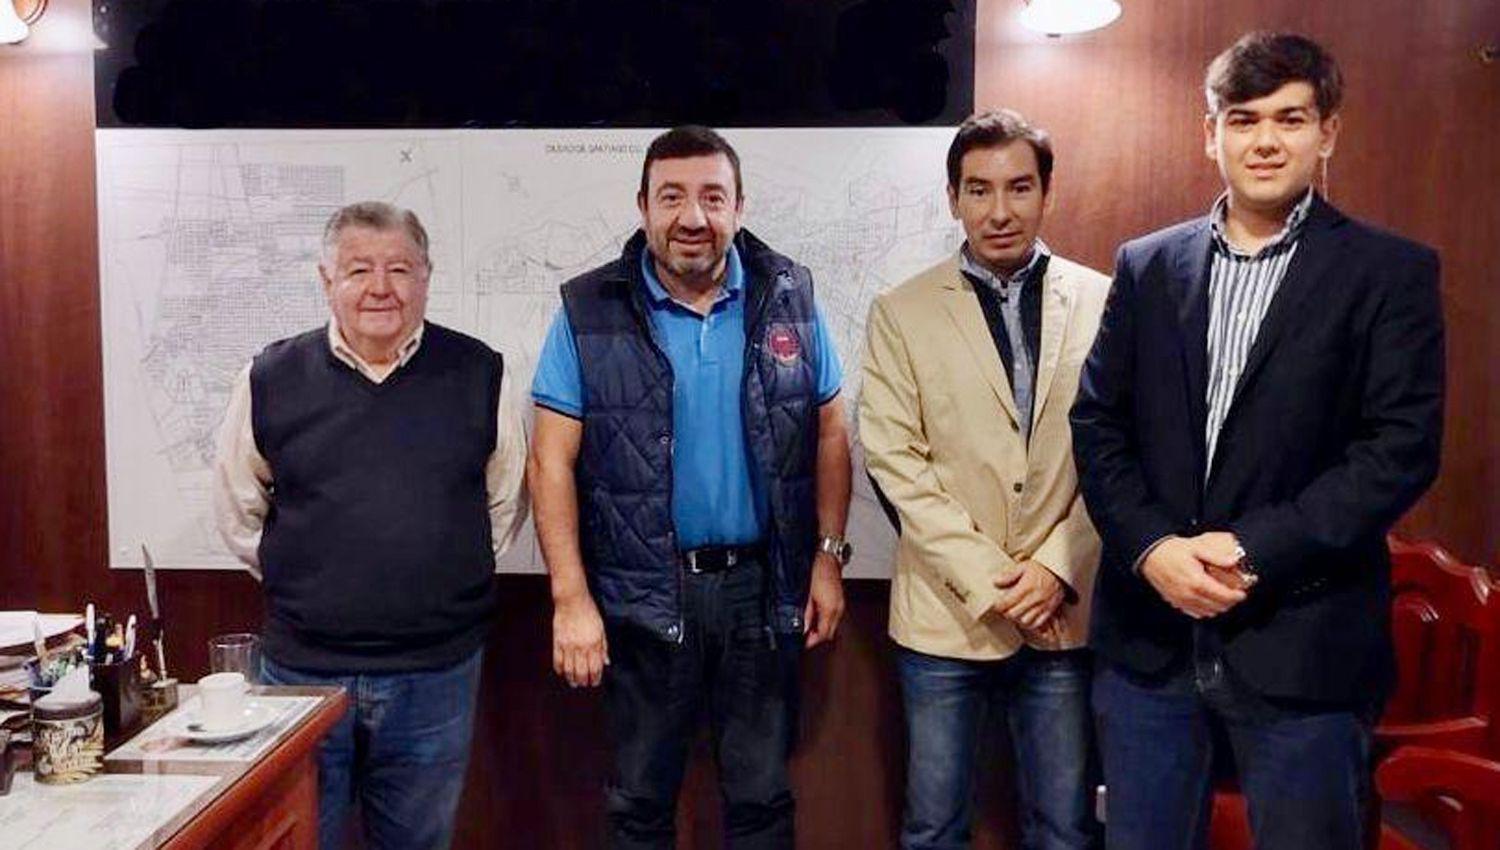 Reunioacuten de Corredores Puacuteblicos Inmobiliarios con el diputado nacional Joseacute Herrera